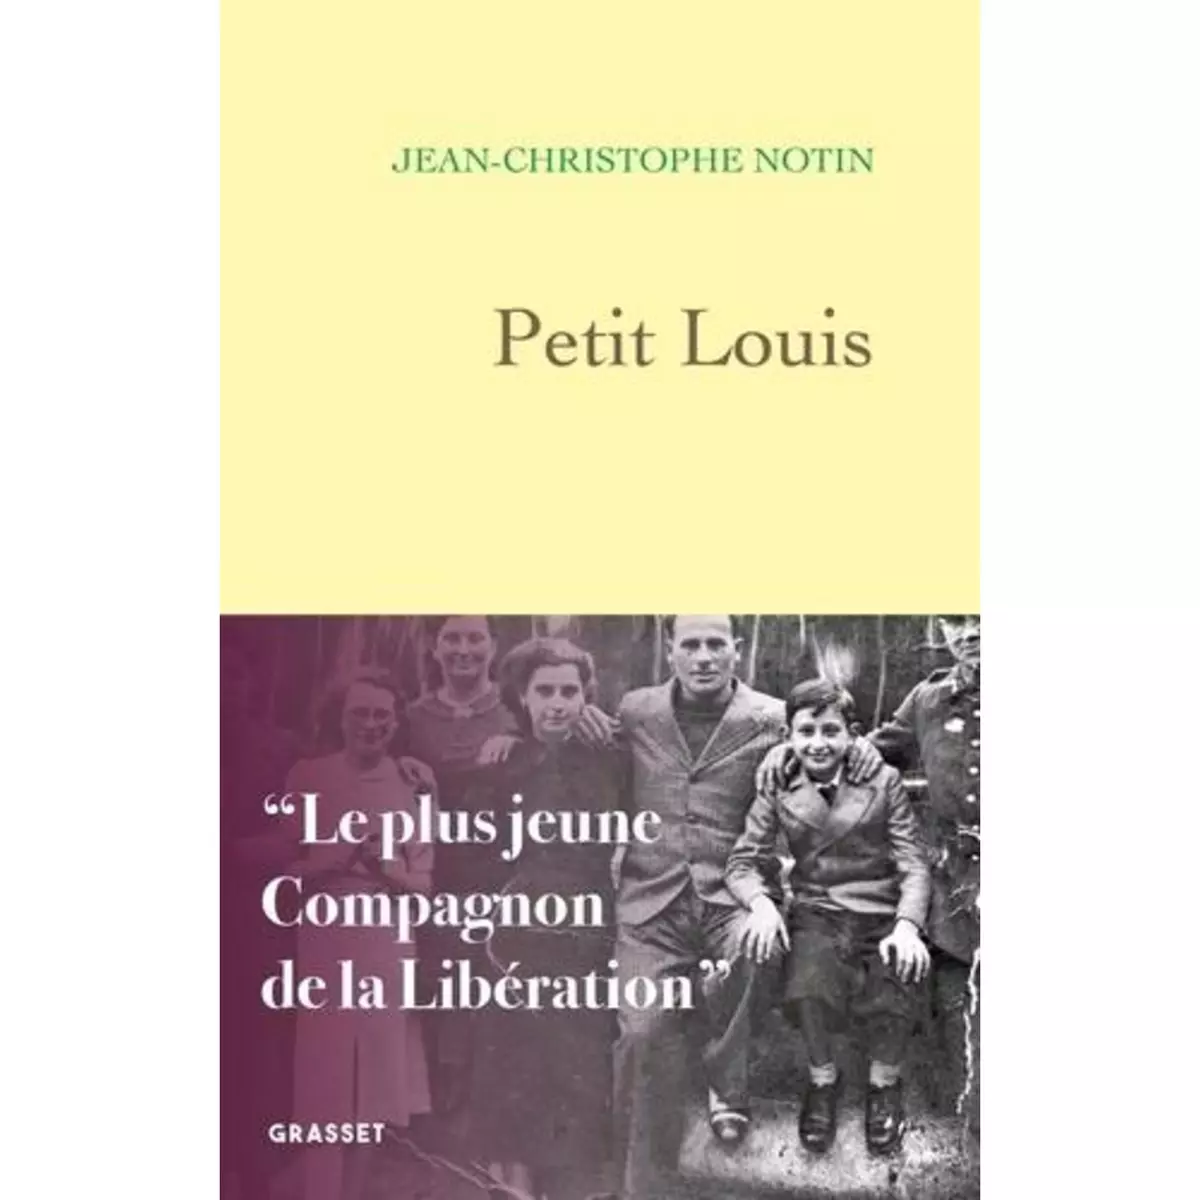  PETIT LOUIS, Notin Jean-Christophe